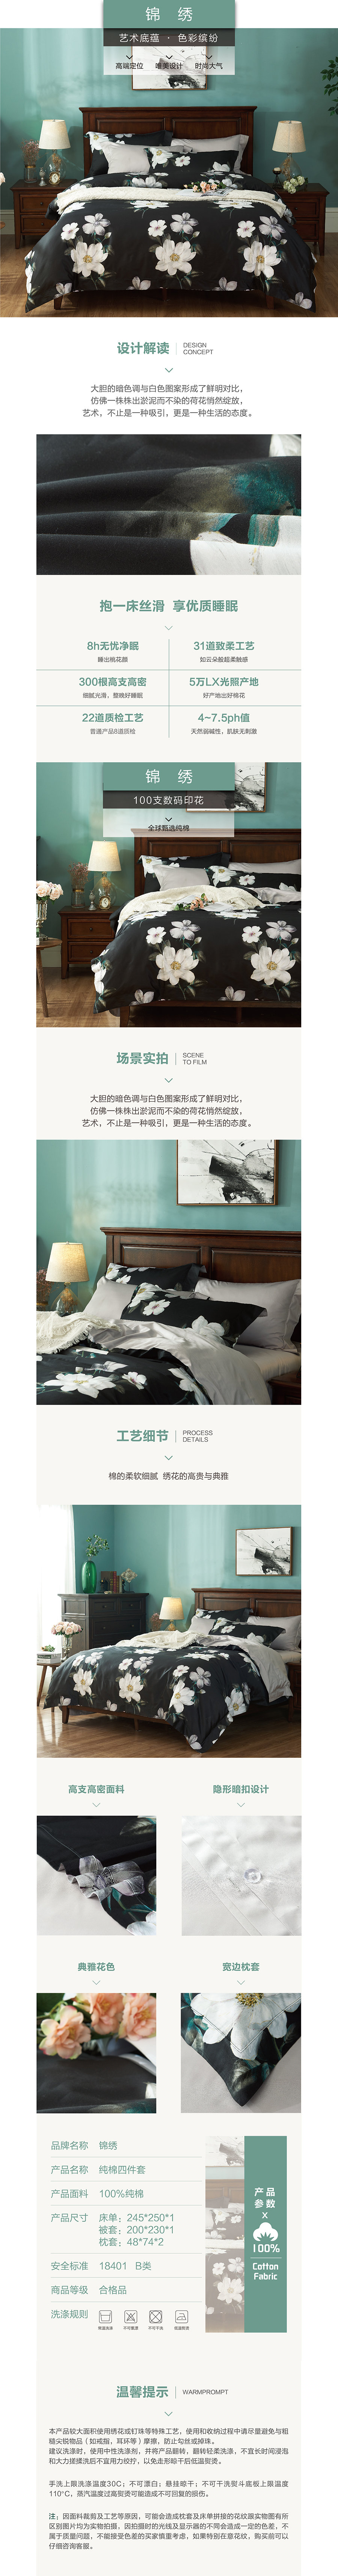 床上用品 纯棉四件套 蕾丝工艺 数码印花系列 锦绣